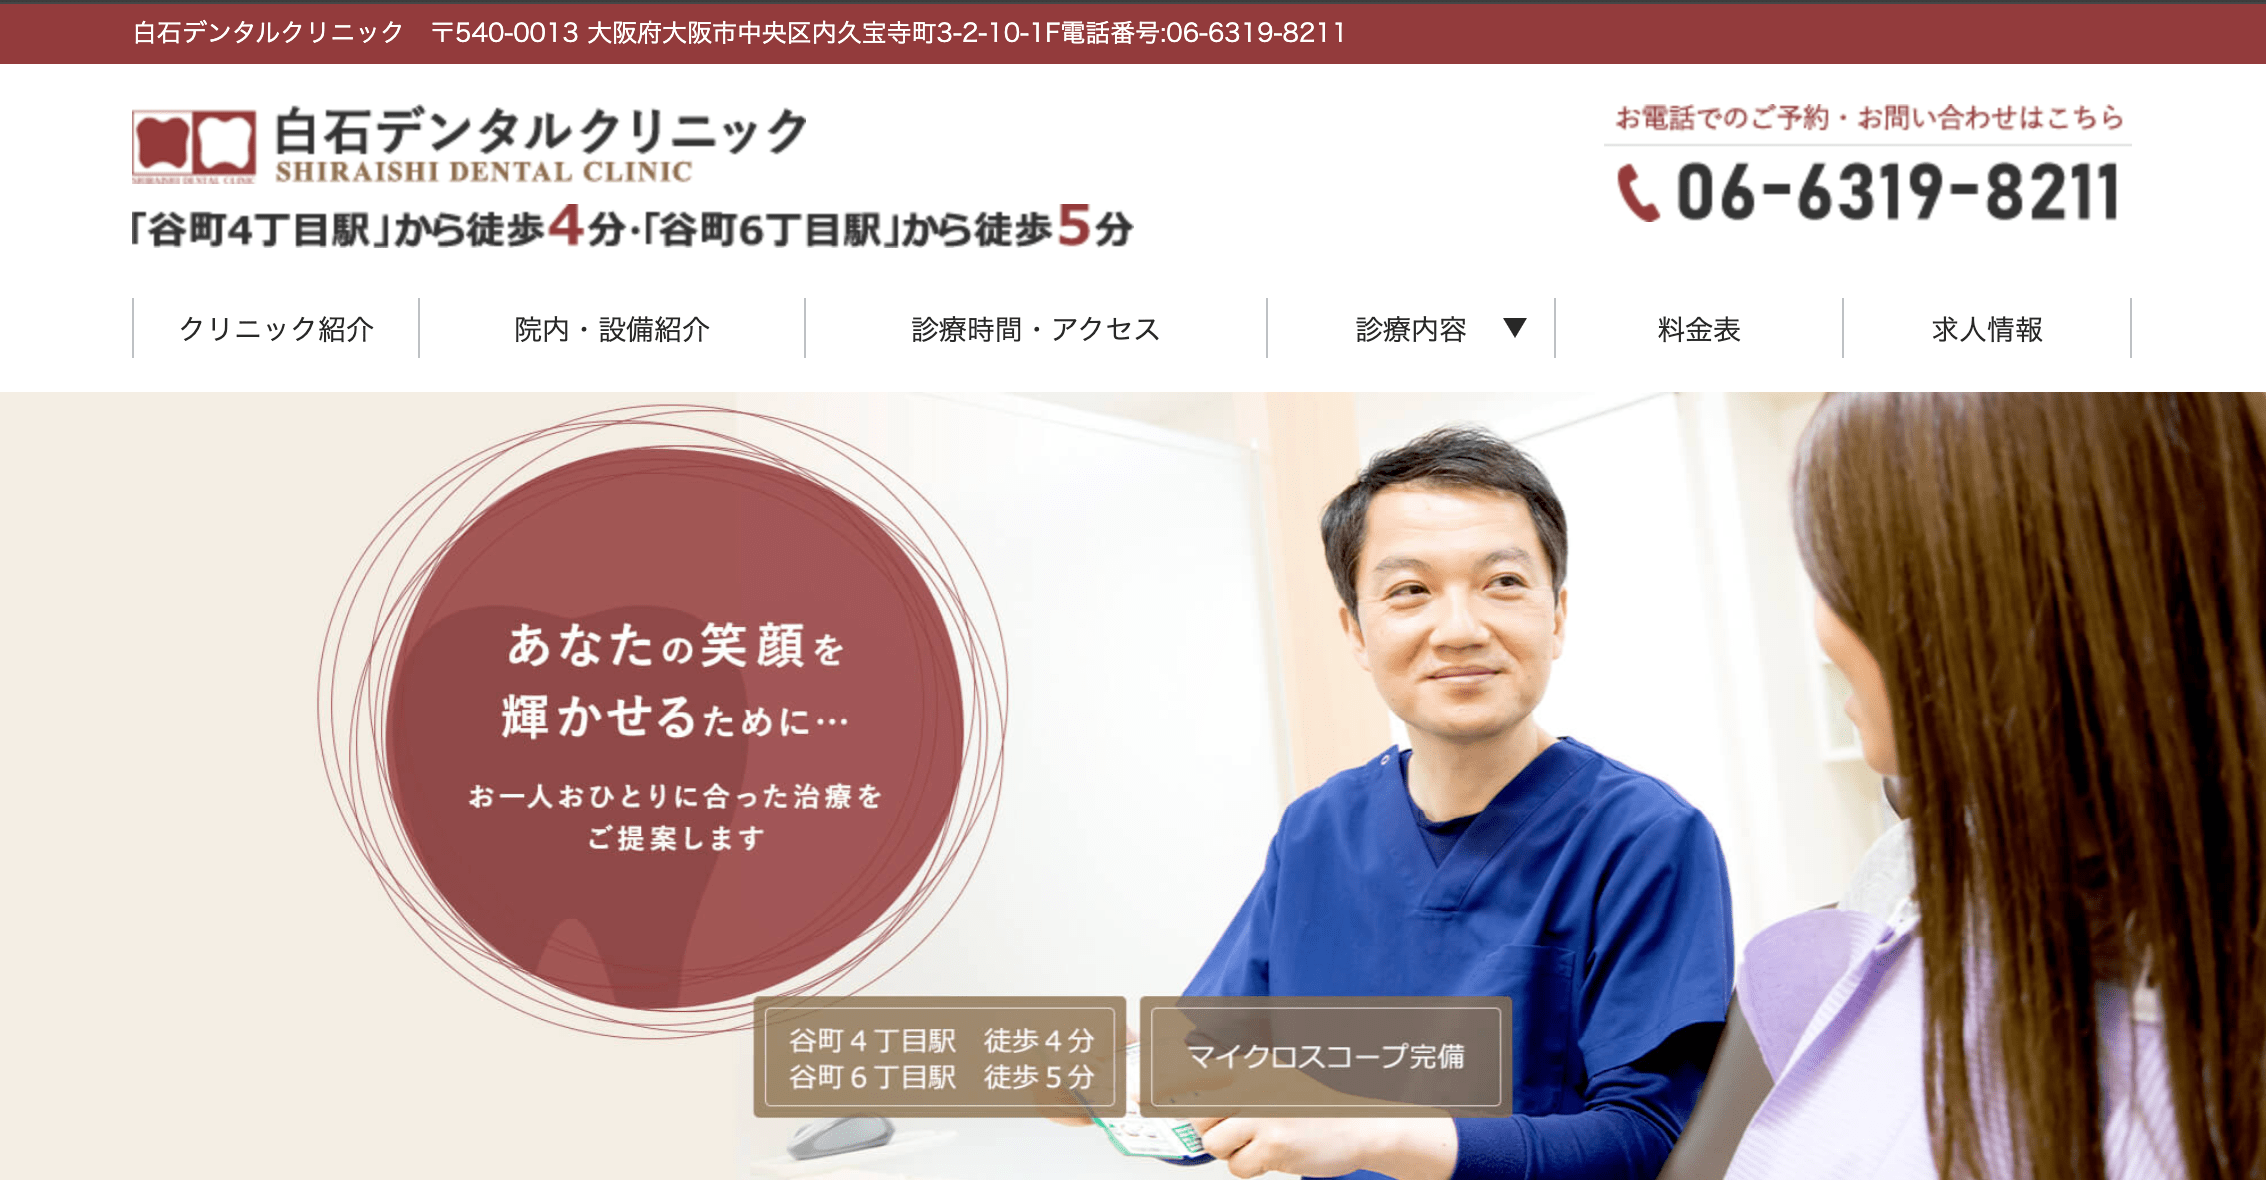 大阪市で評判のホワイトニングにおすすめの歯科クリニック10選 白石デンタルクリニック